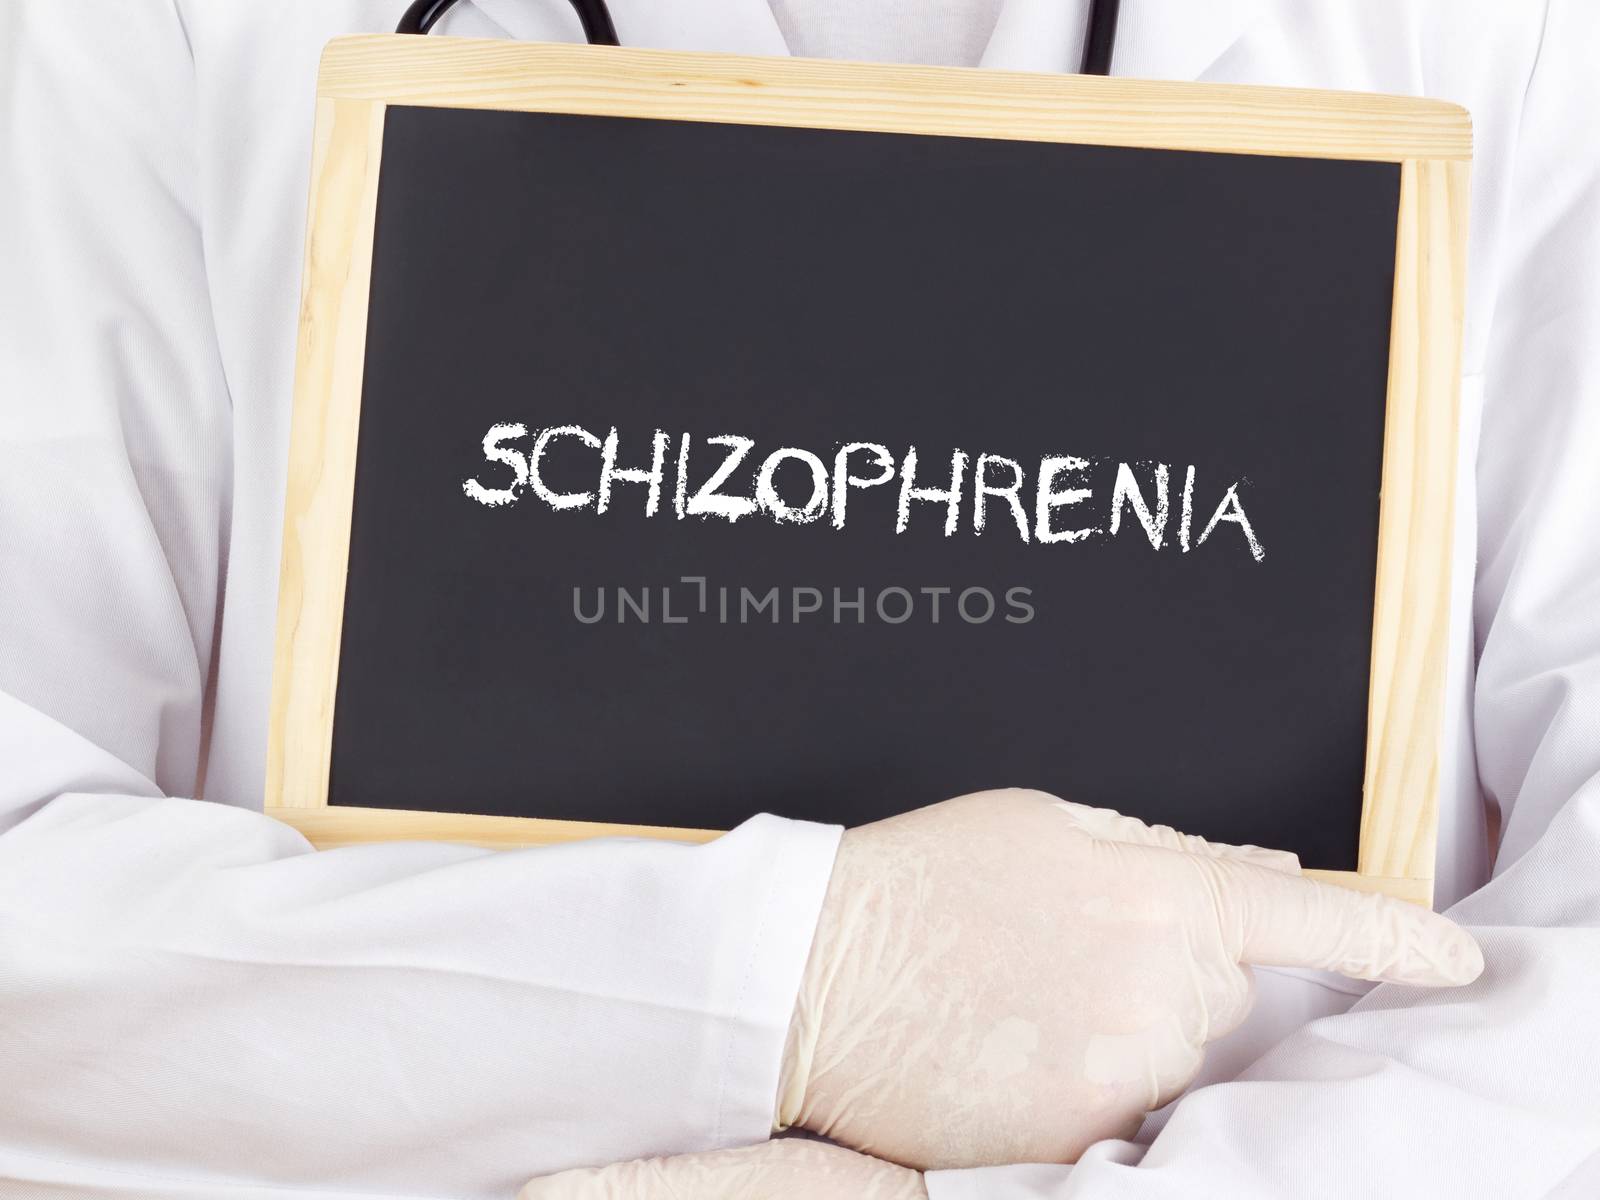 Doctor shows information: Schizophrenia